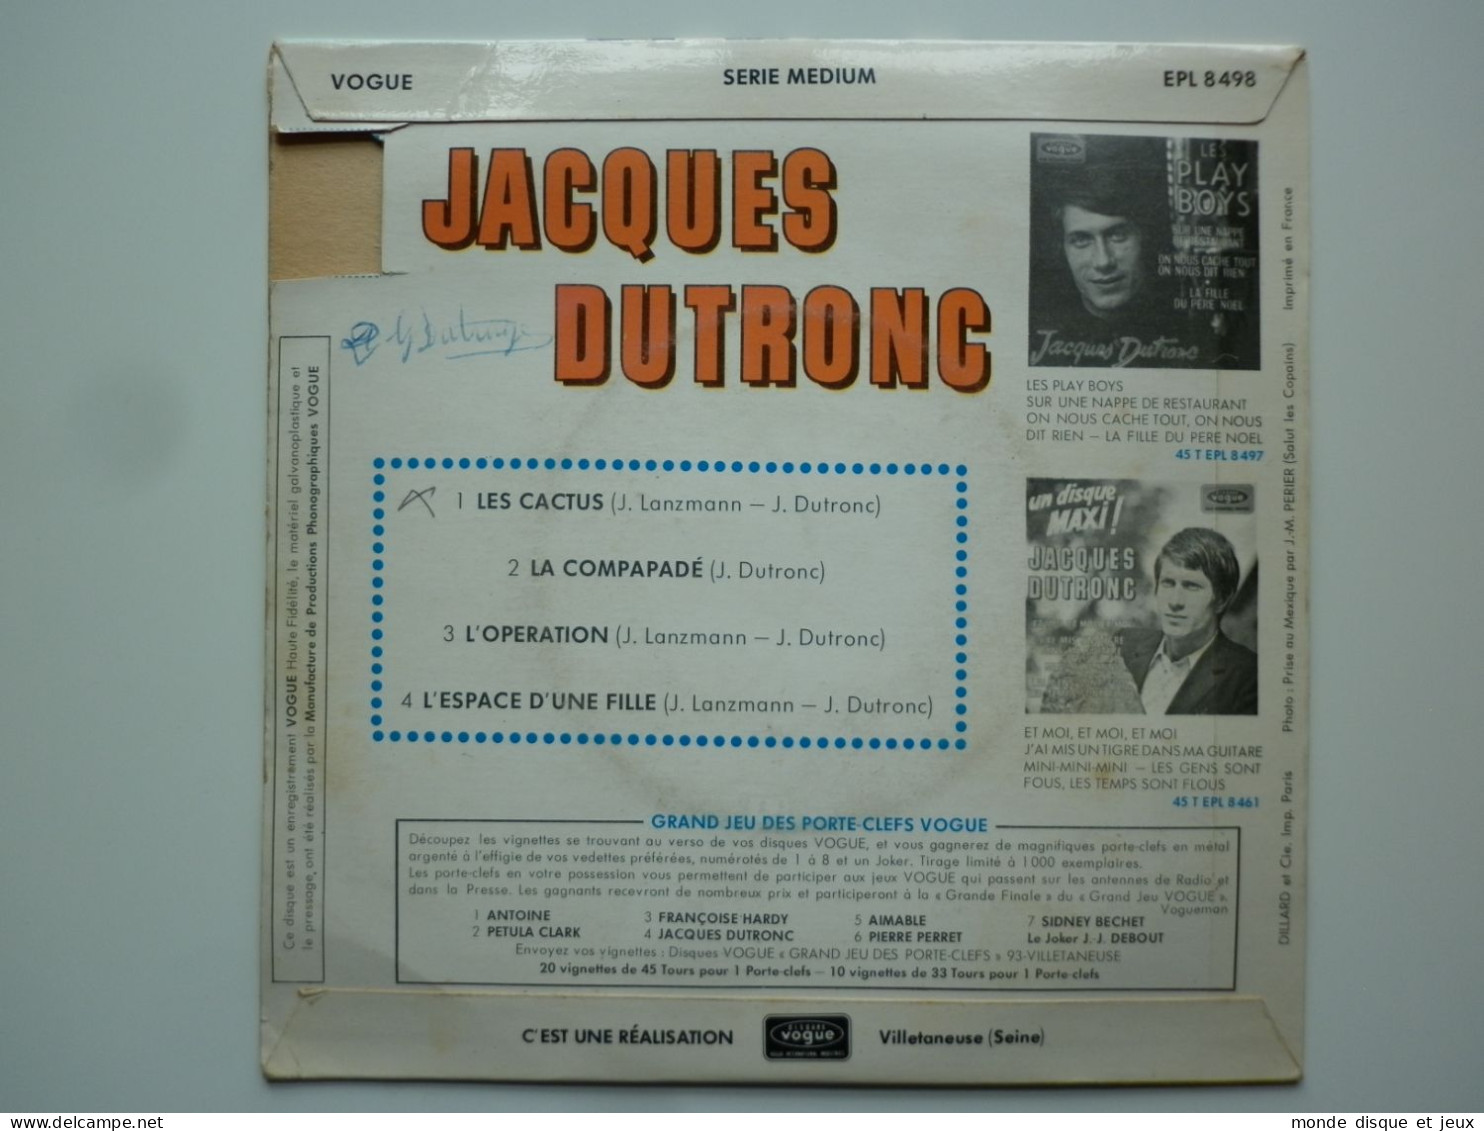 Jacques Dutronc 45Tours EP Vinyle Les Cactus - 45 Rpm - Maxi-Single